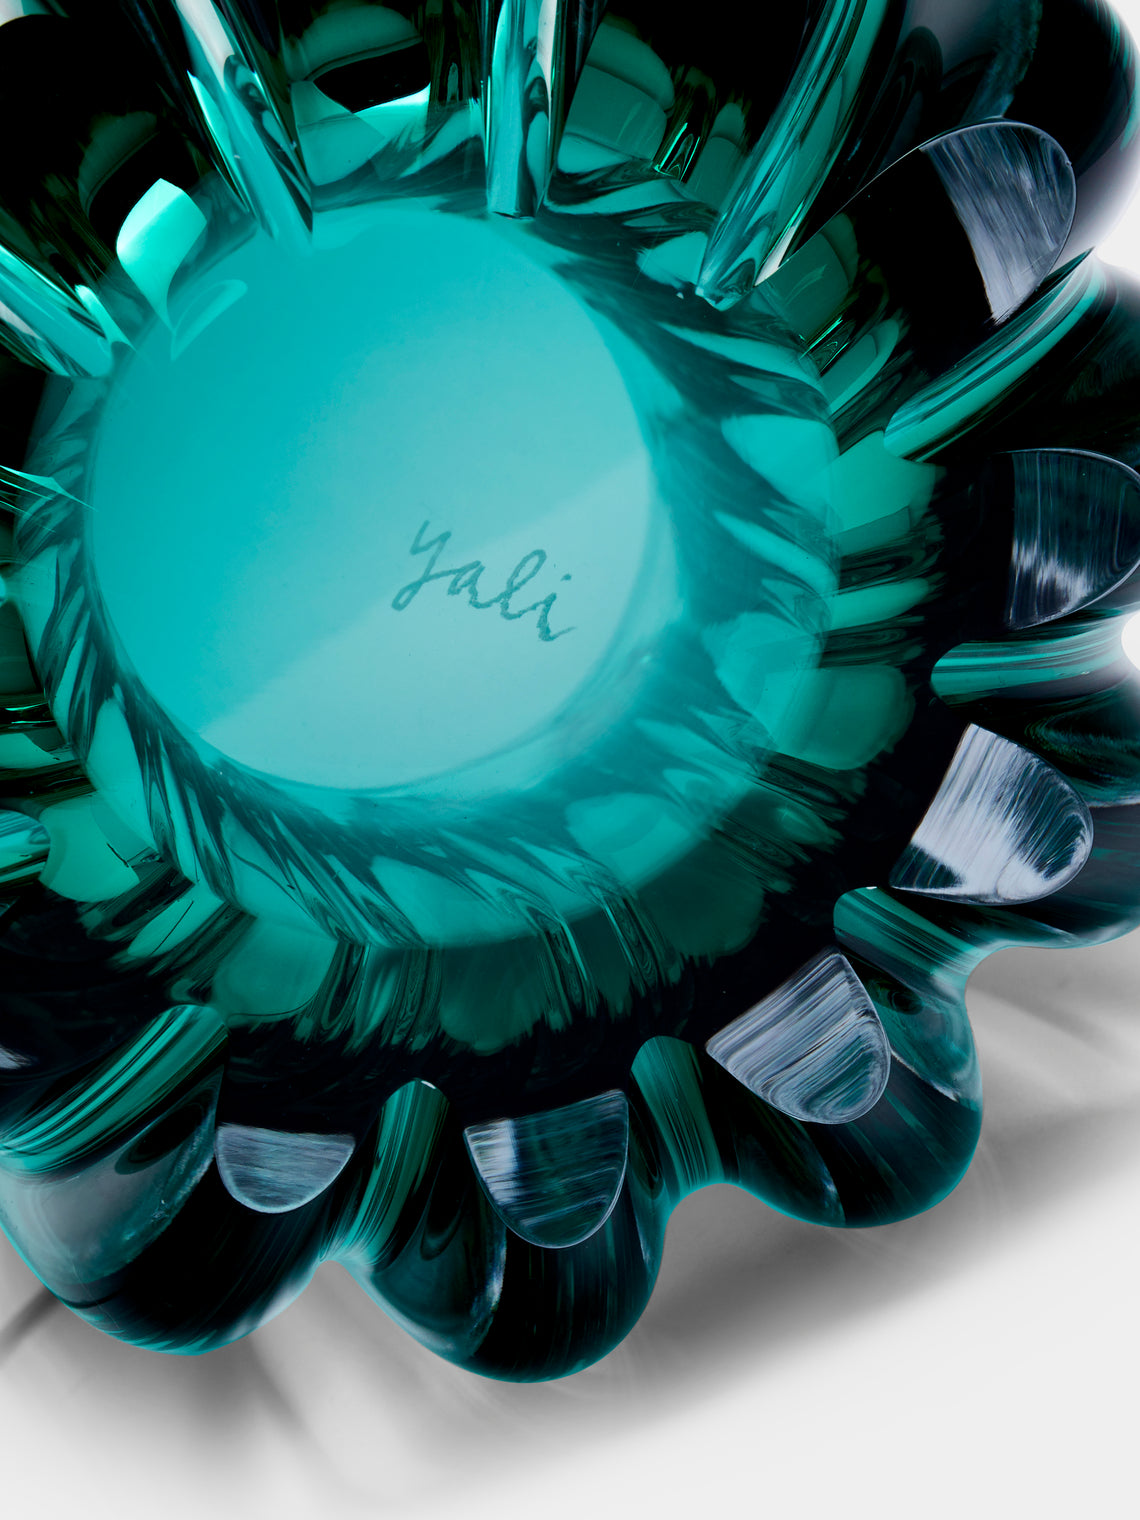 Yali Glass - Fiori Hand-Blown Murano Glass Large Vase - Green - ABASK